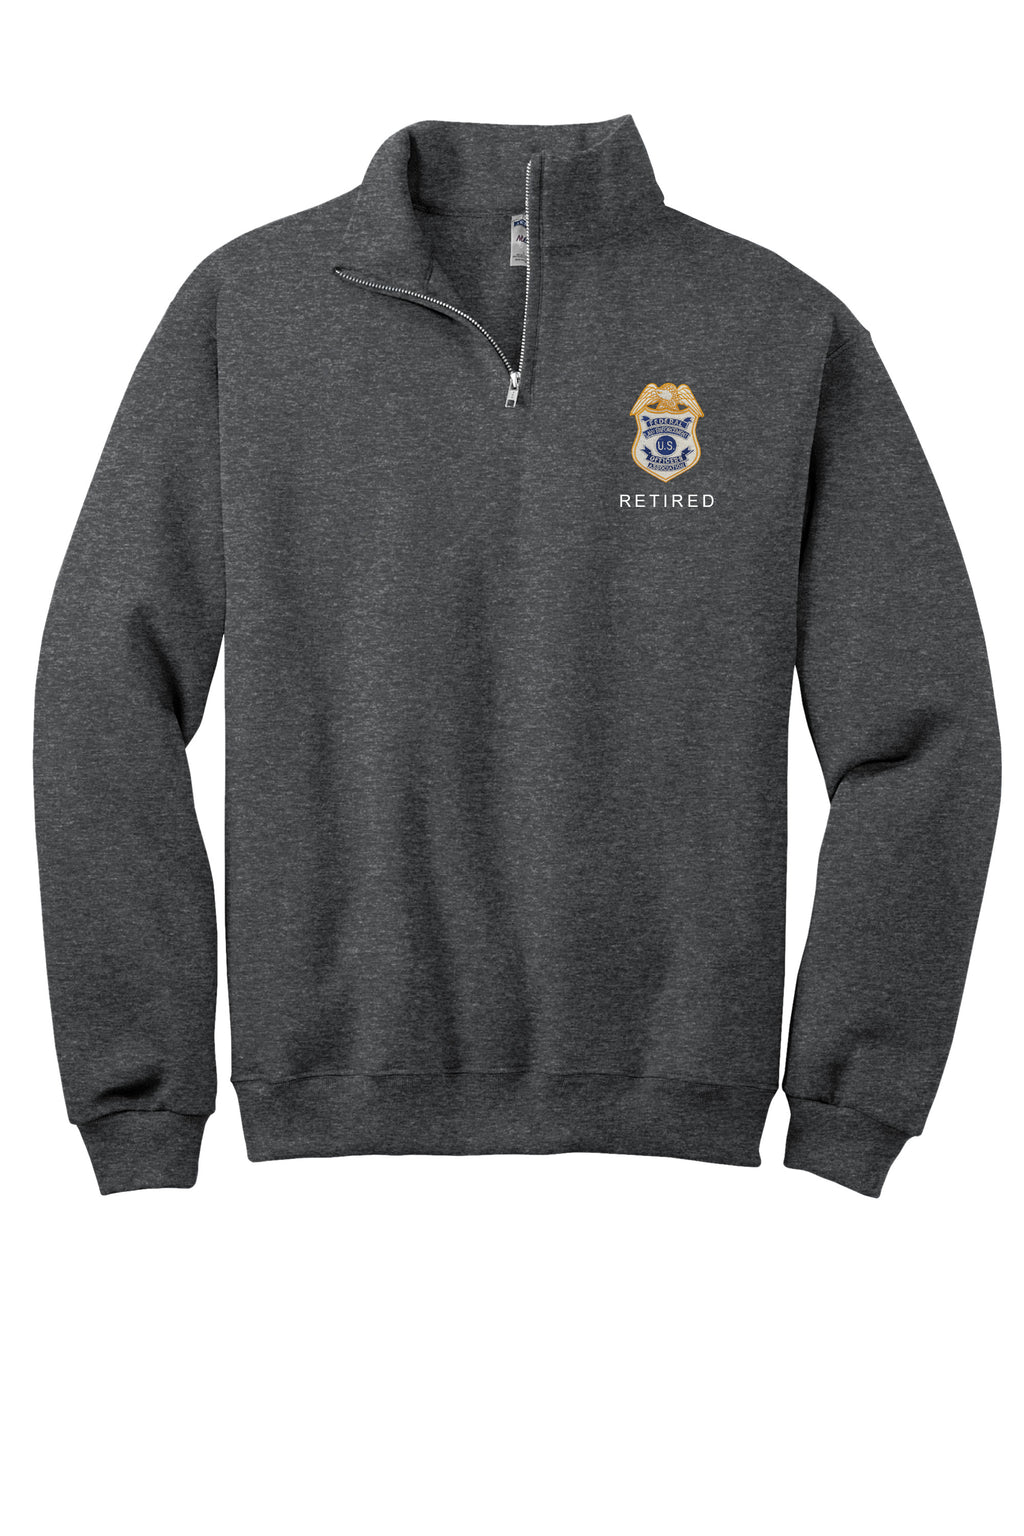 Original Badge Retired 1/4 Zip Collar Sweatshirt - Heather Black